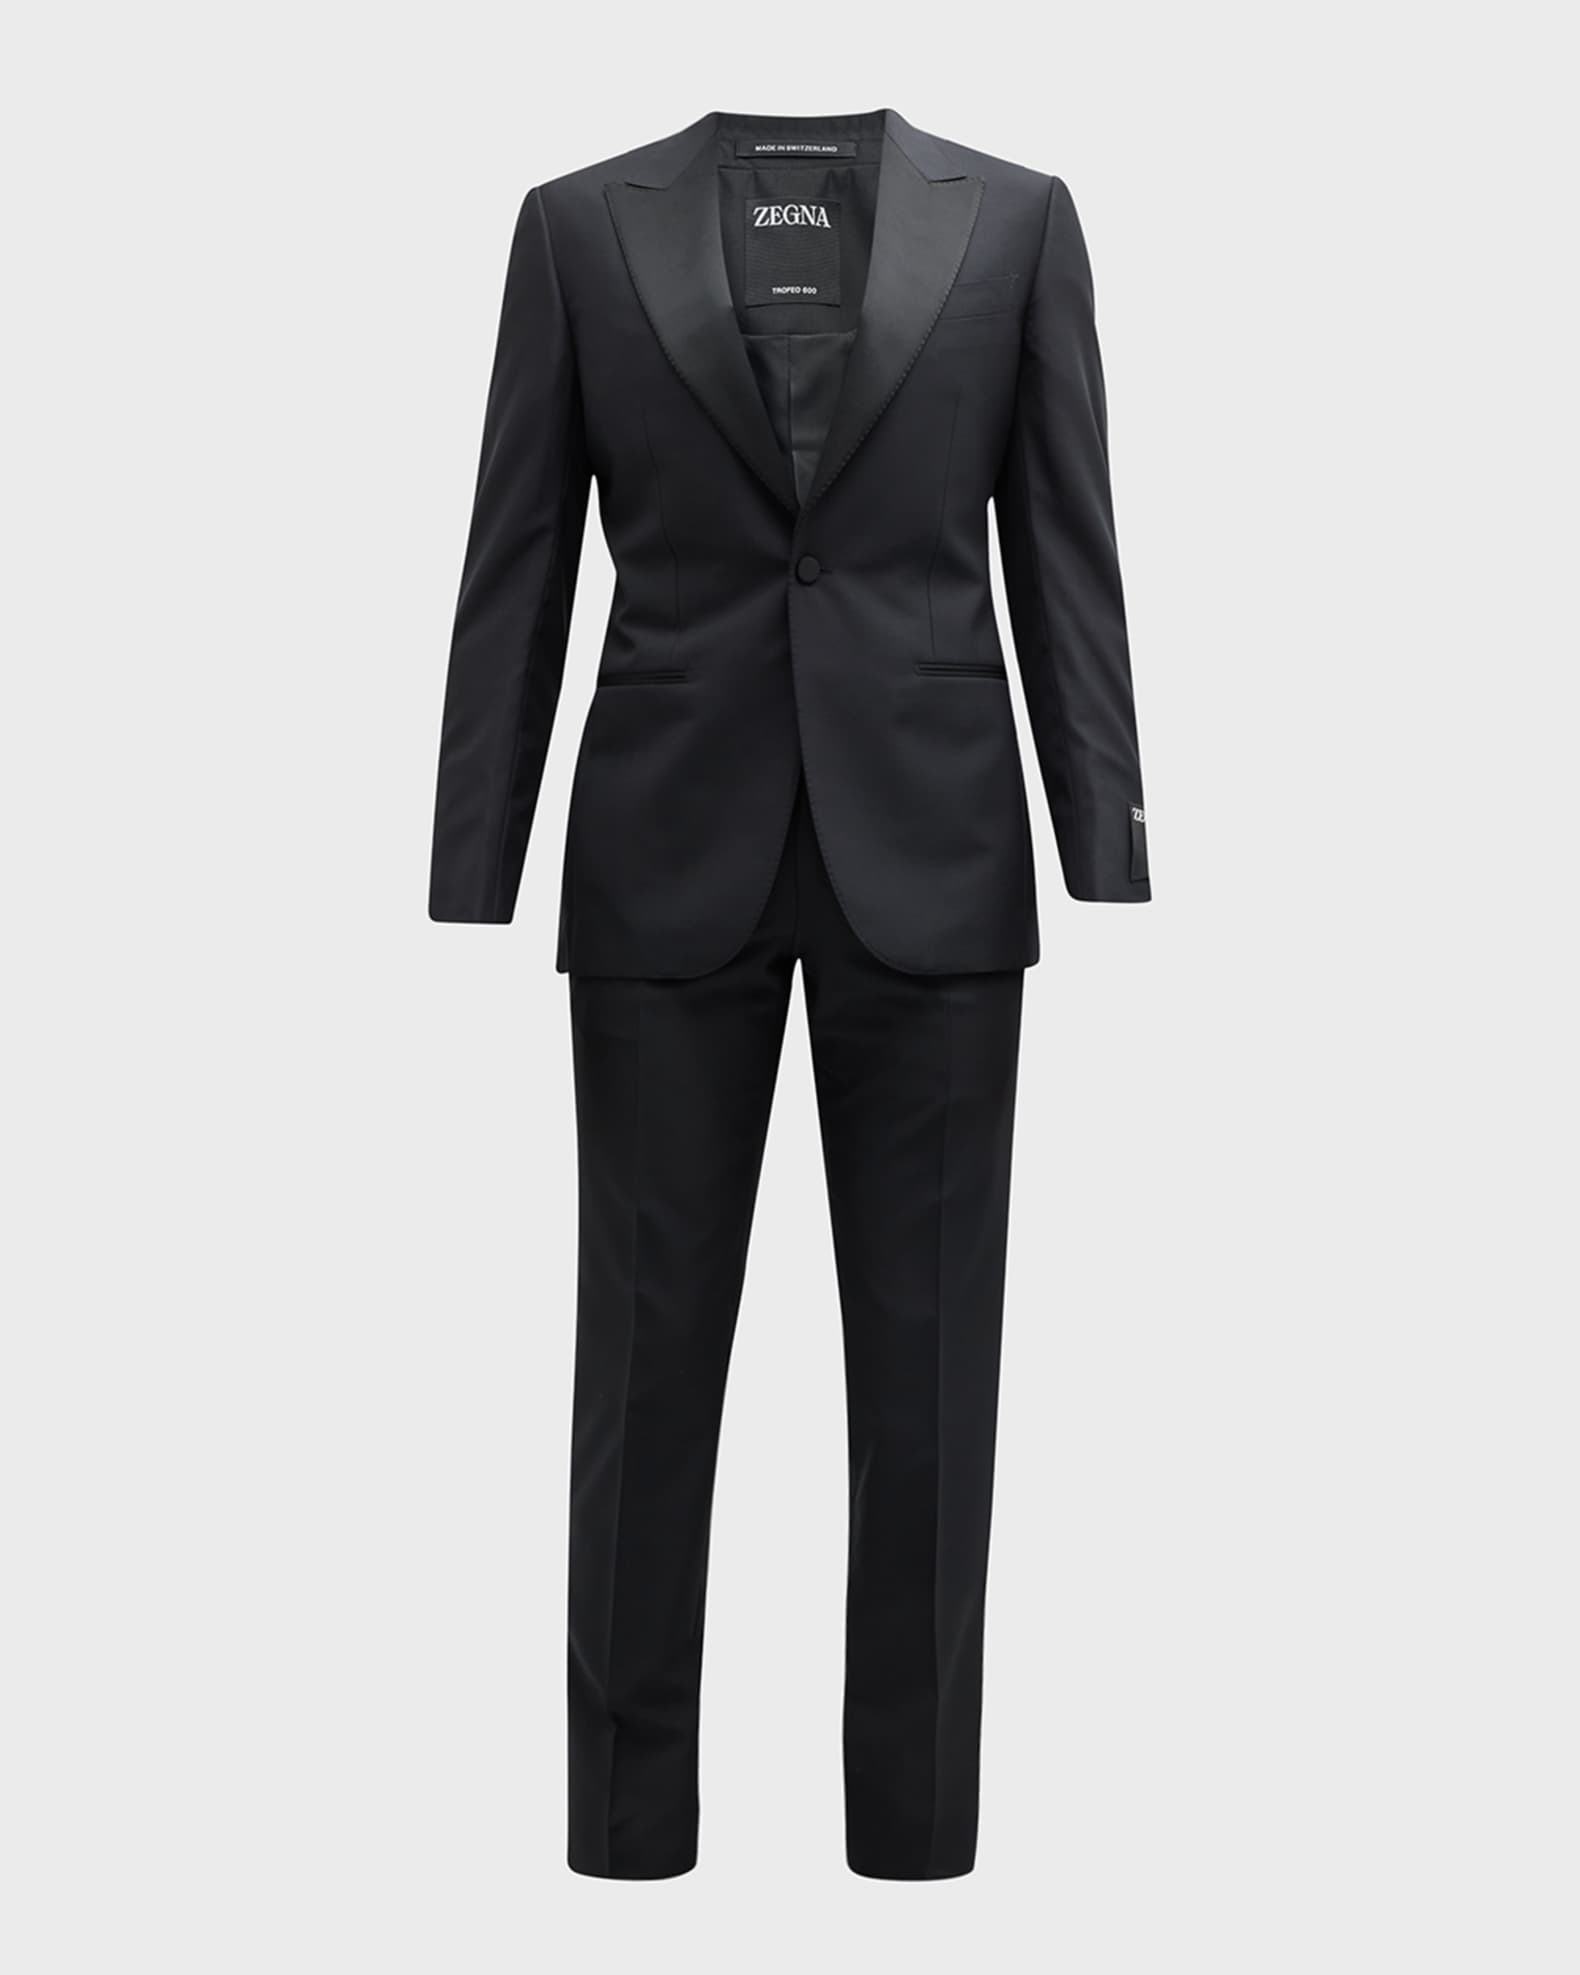 ZEGNA Men's Sartorial Wool and Silk Tuxedo | Neiman Marcus